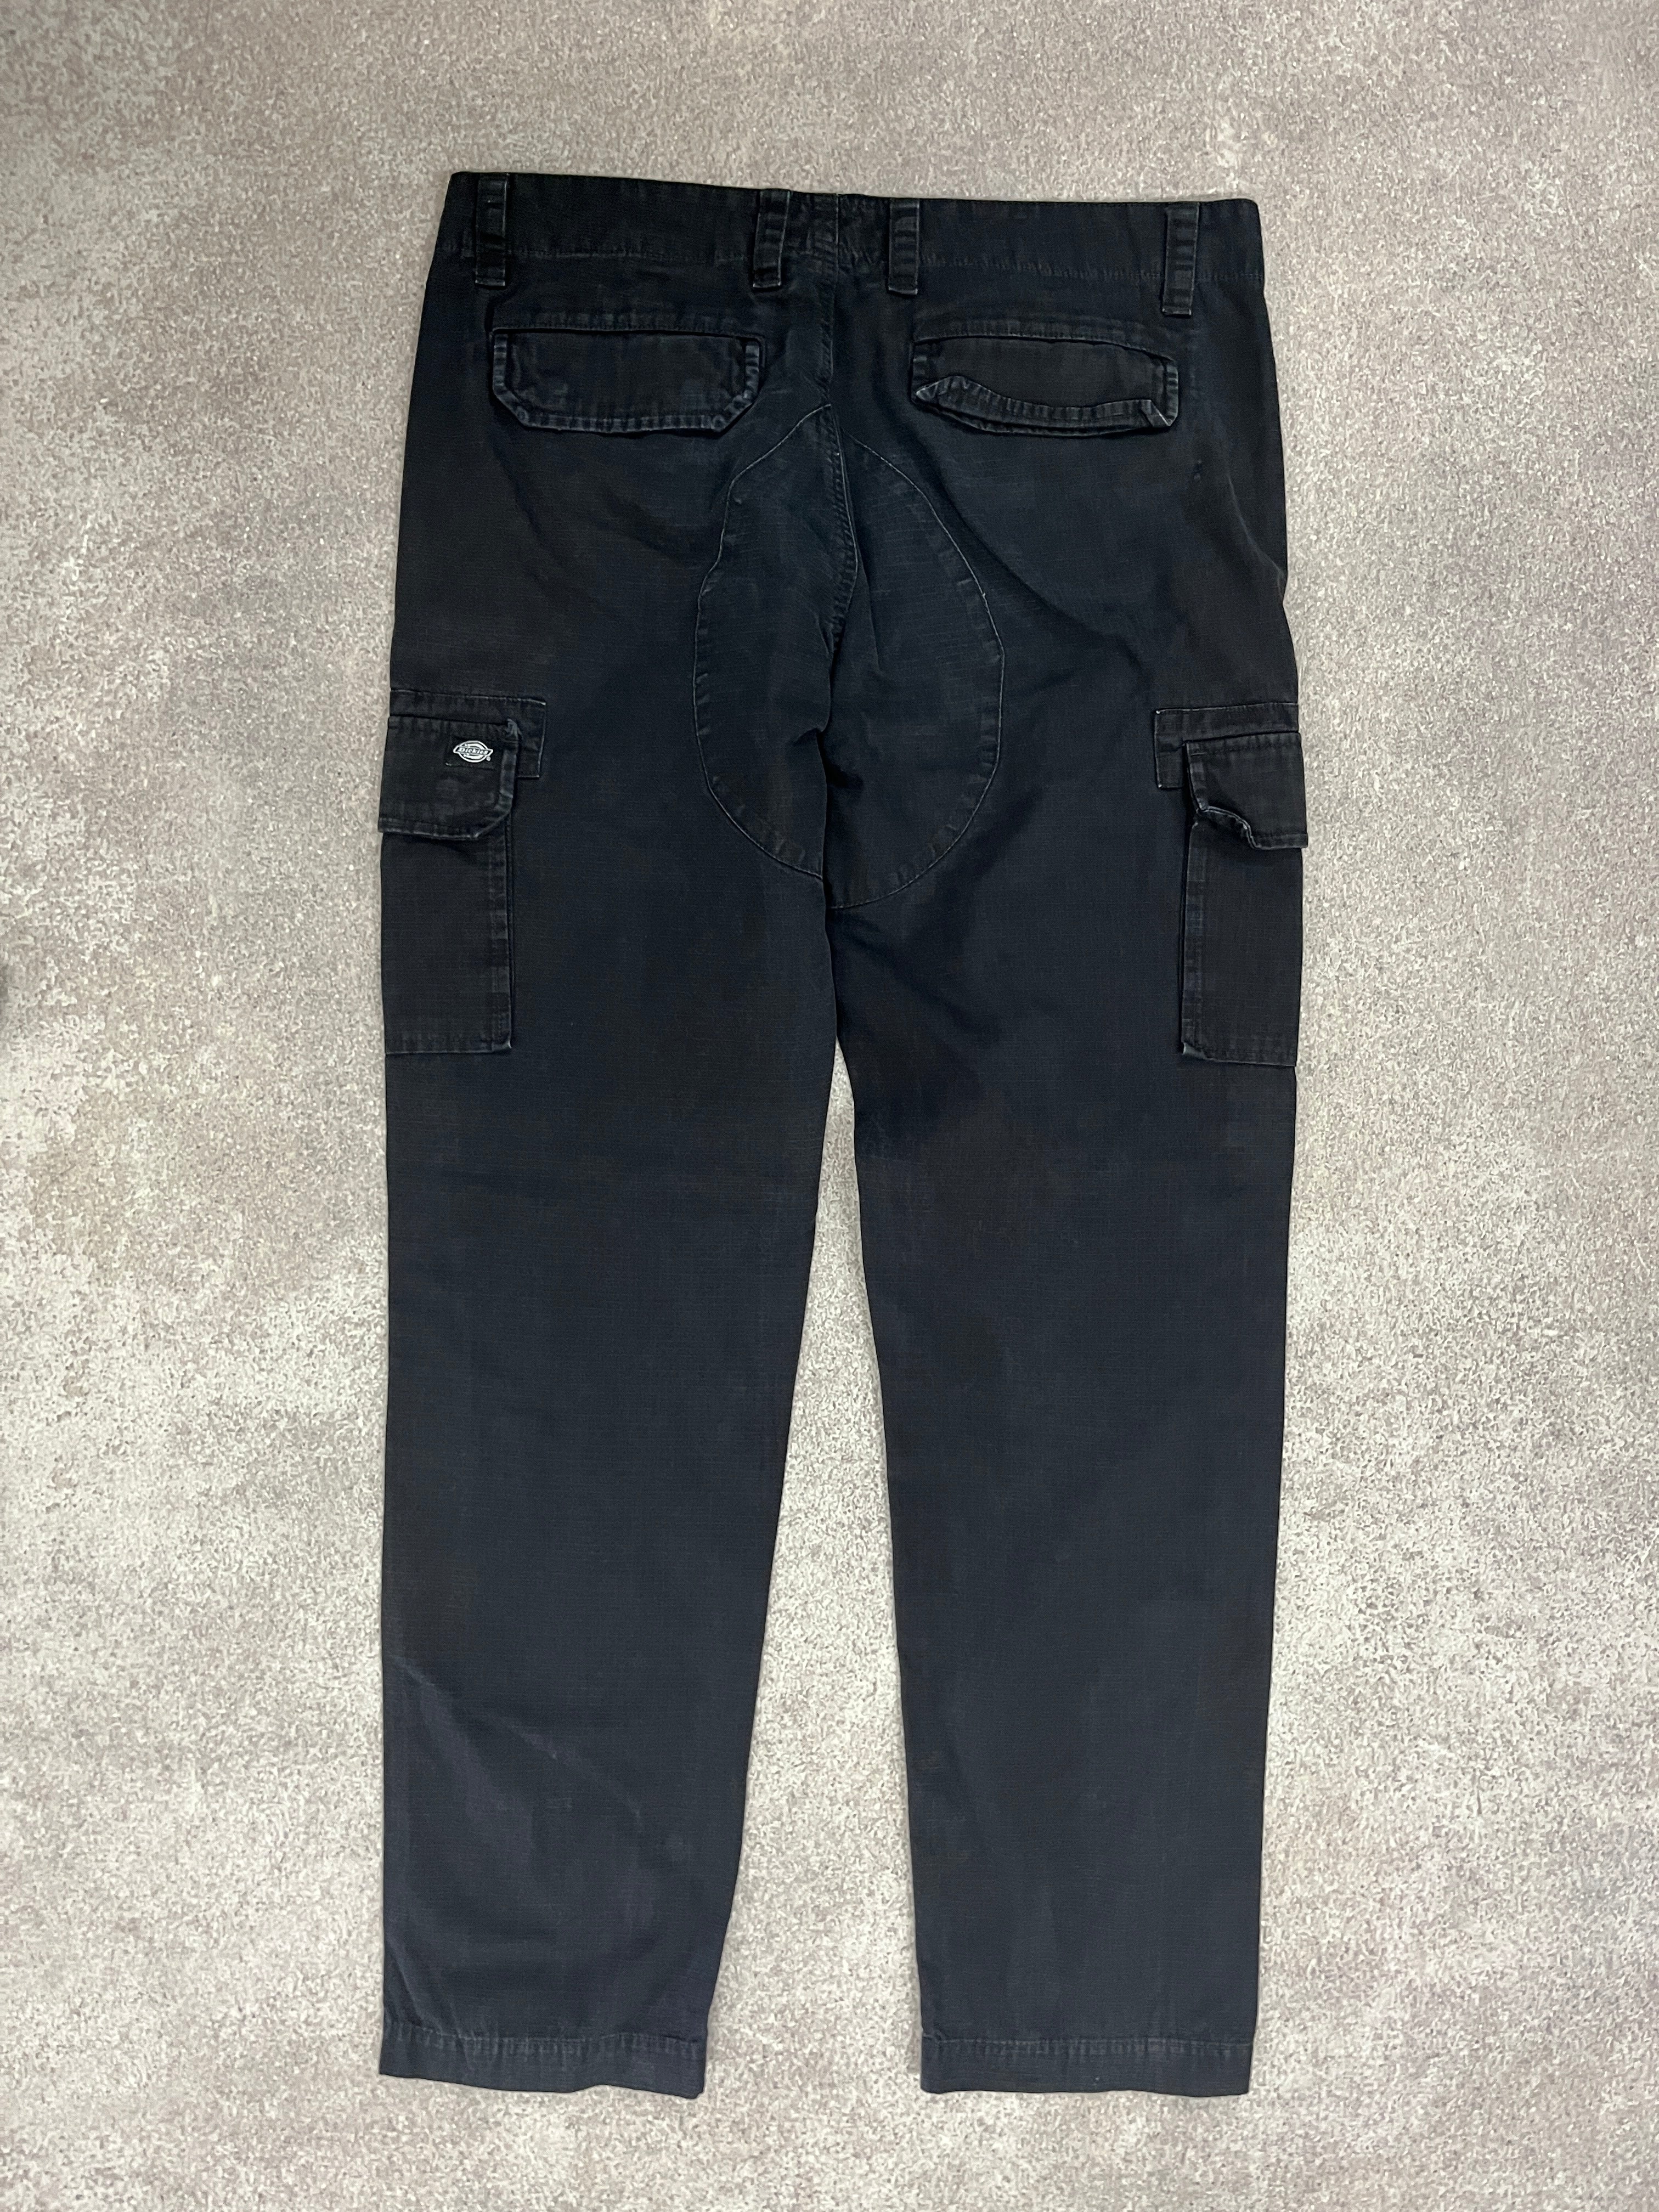 Vintage Dickies Carpenter Pants Black // W34 L34 - RHAGHOUSE VINTAGE